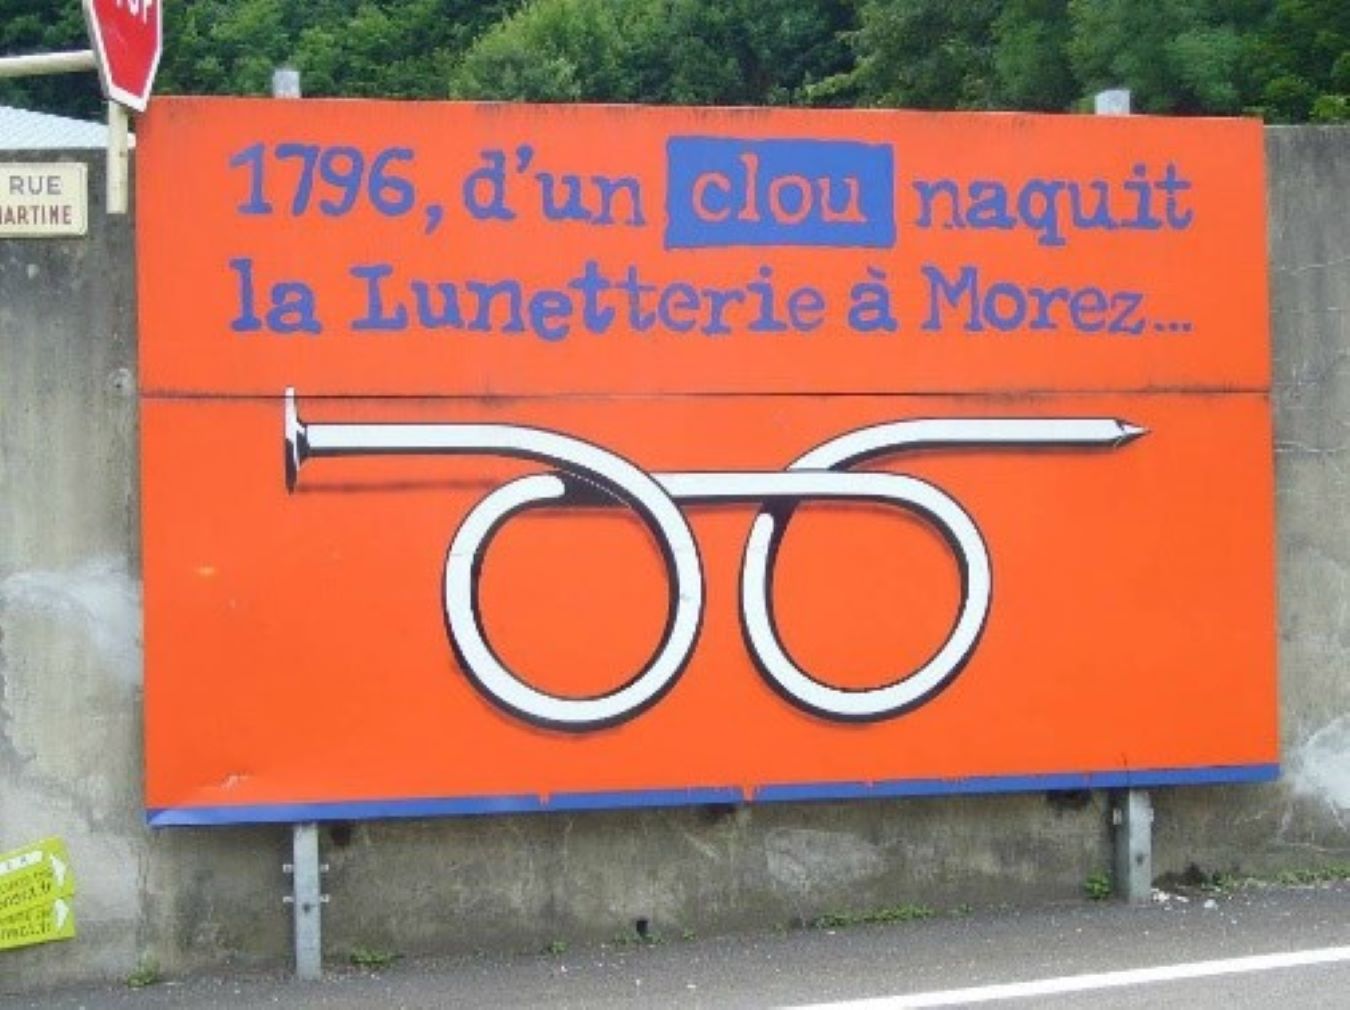 Visuel représentant une paire de lunettes sur fond orange